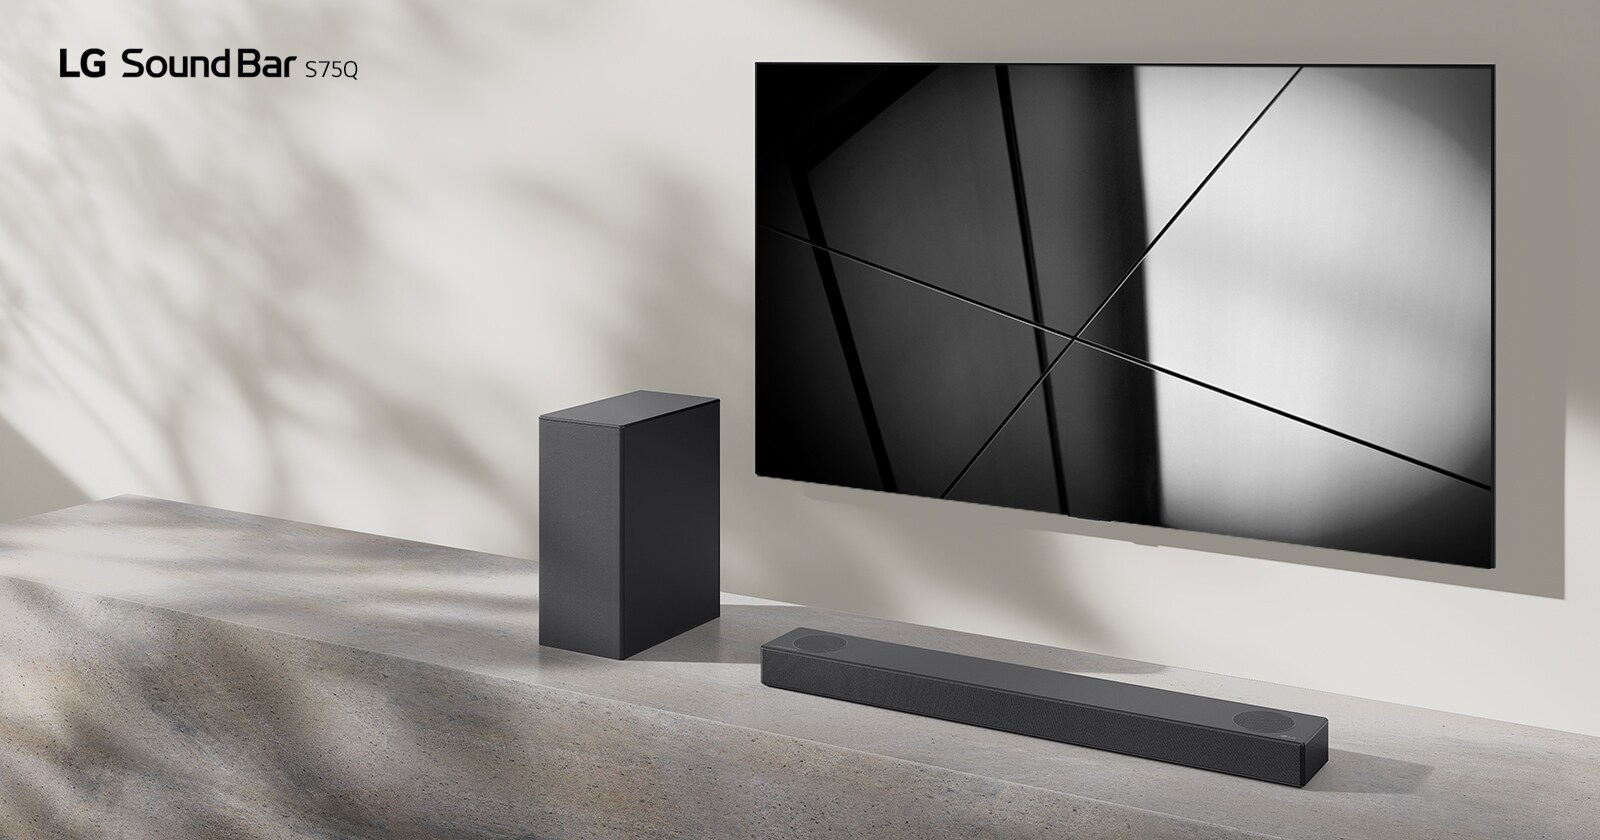 LG Sound Bar S75Q i LG TV postavljeni su zajedno u dnevnoj sobi. Televizor je uključen i prikazuje se crno-bela slika.